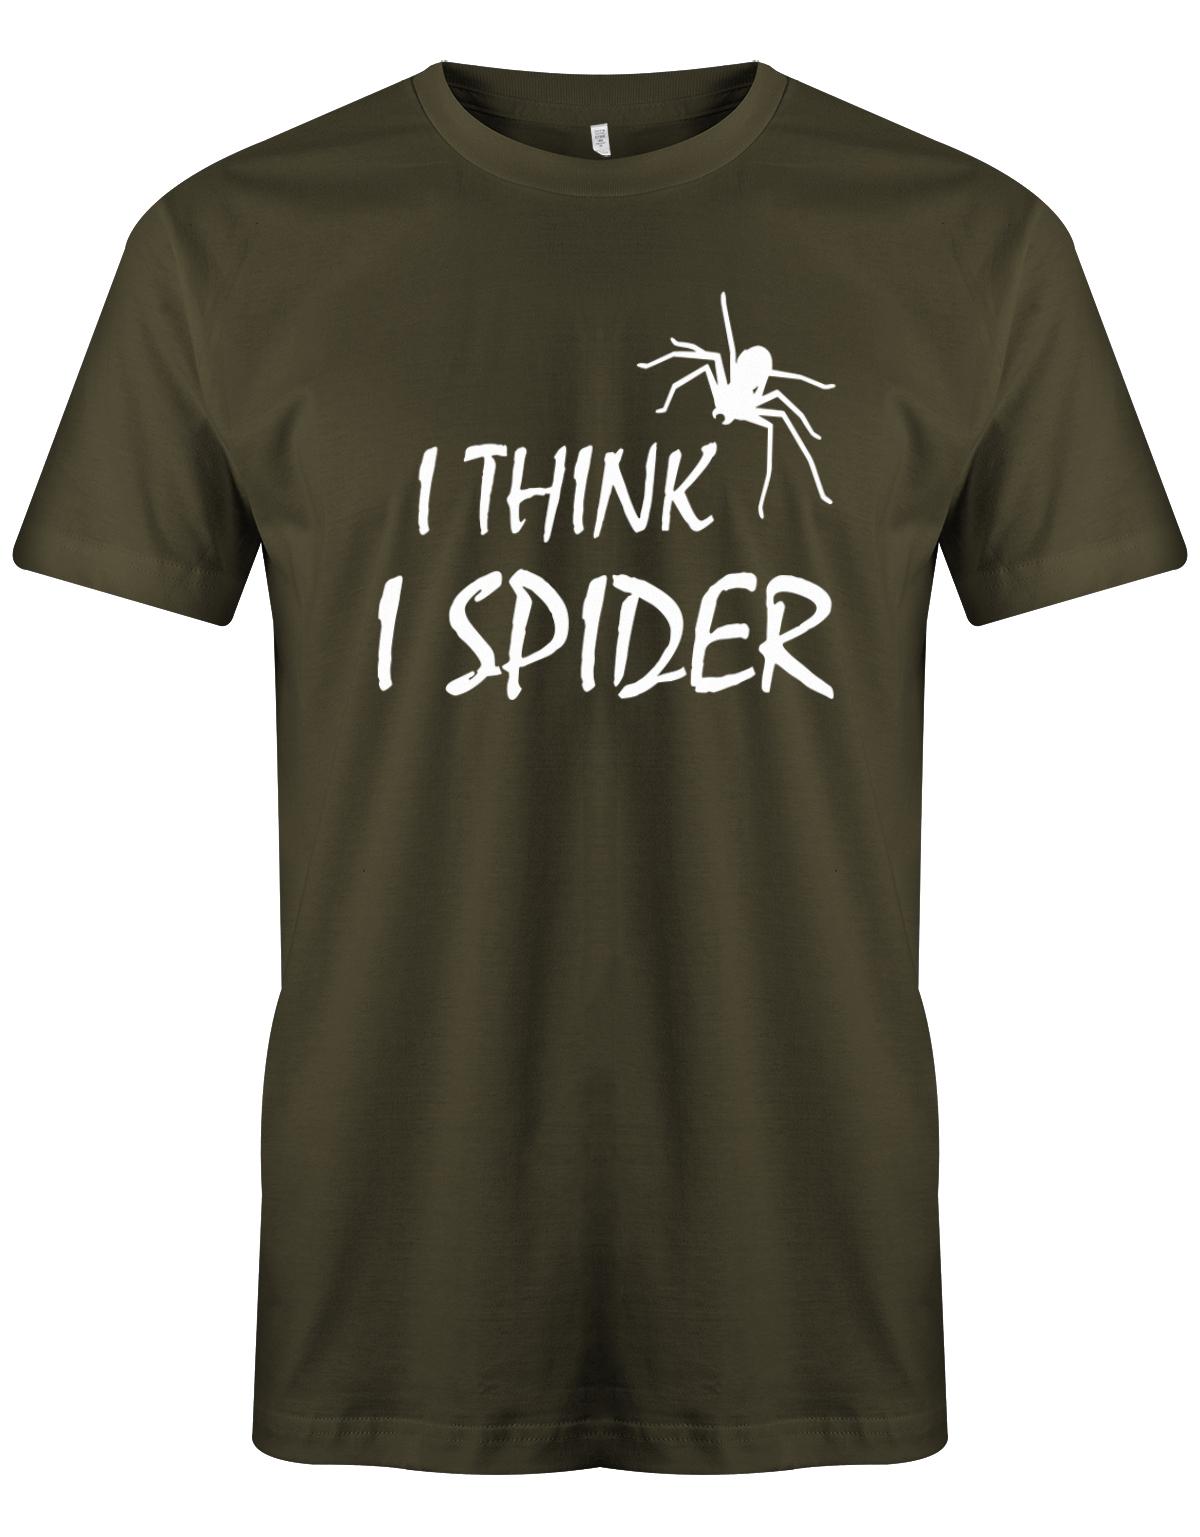 I-think-i-spider-herren-Shirt-army